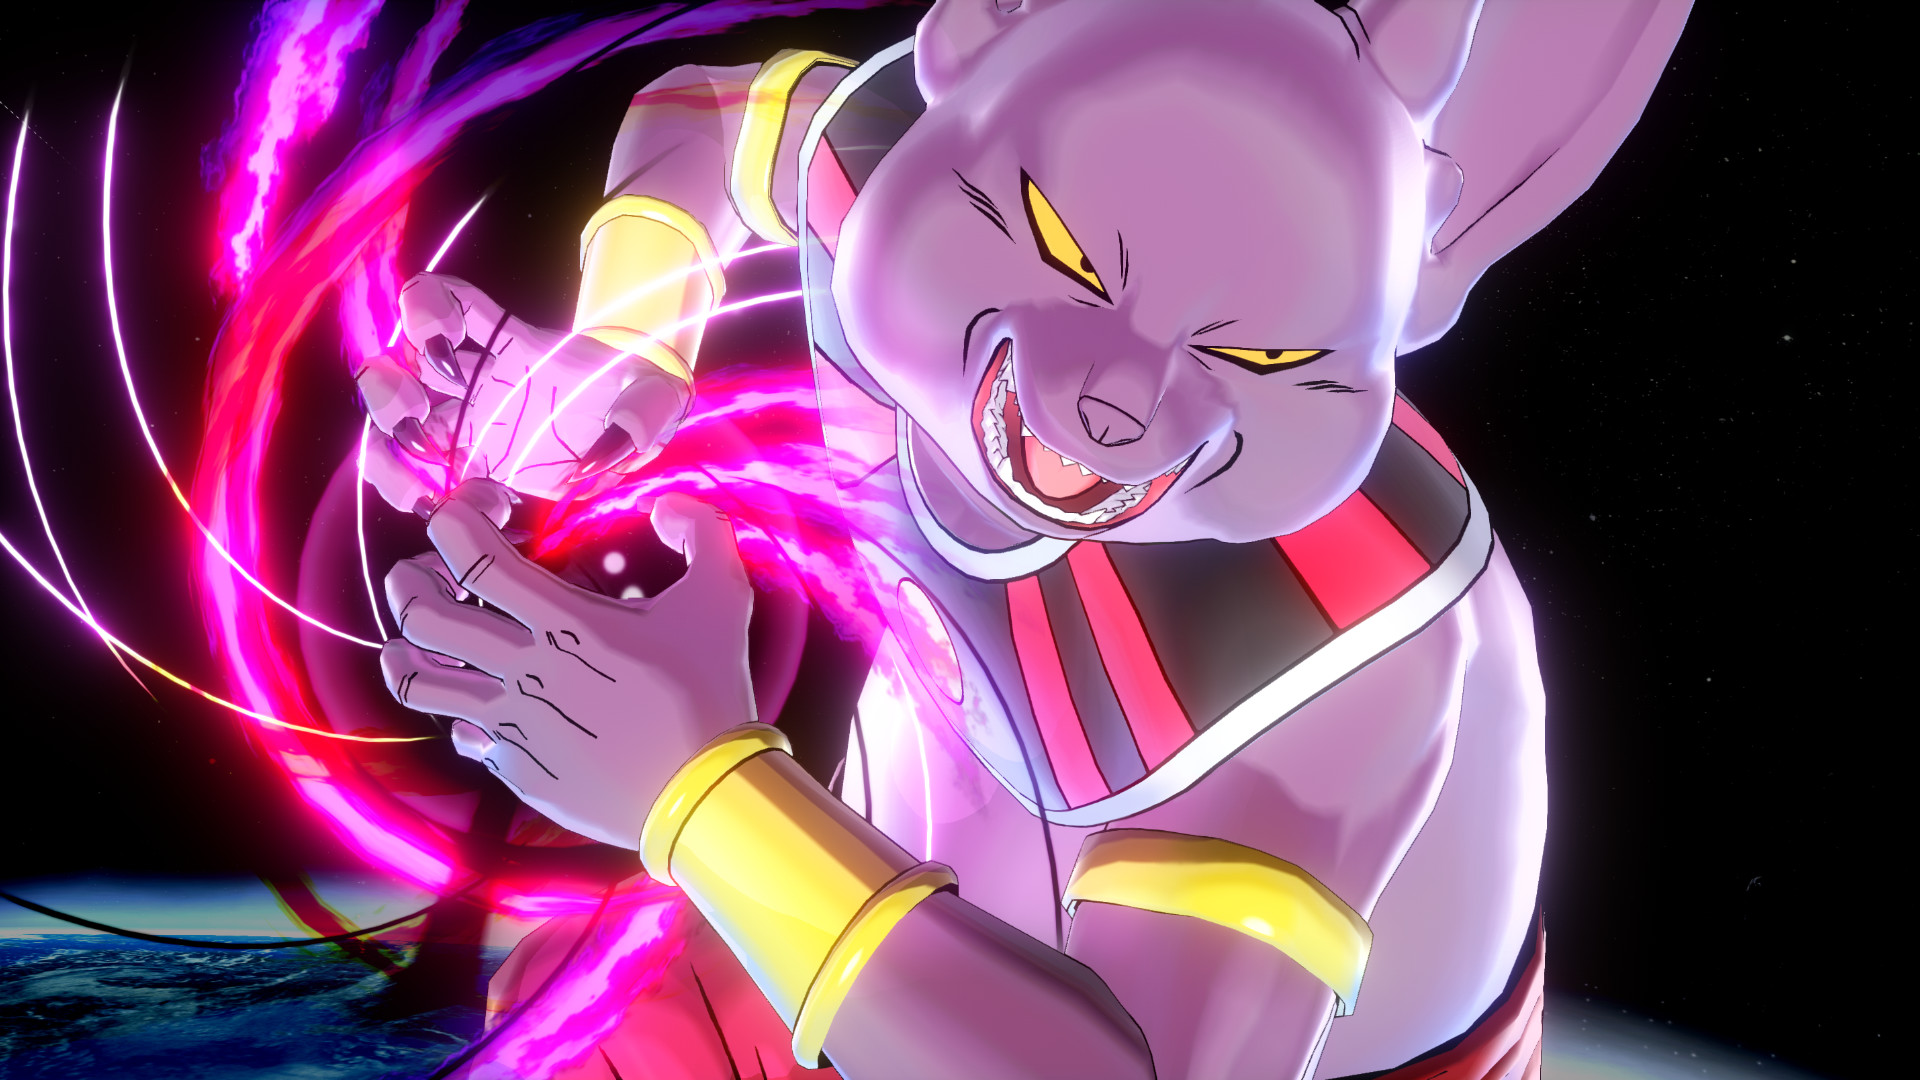 Steam Community :: :: Goku Super saiyan 2